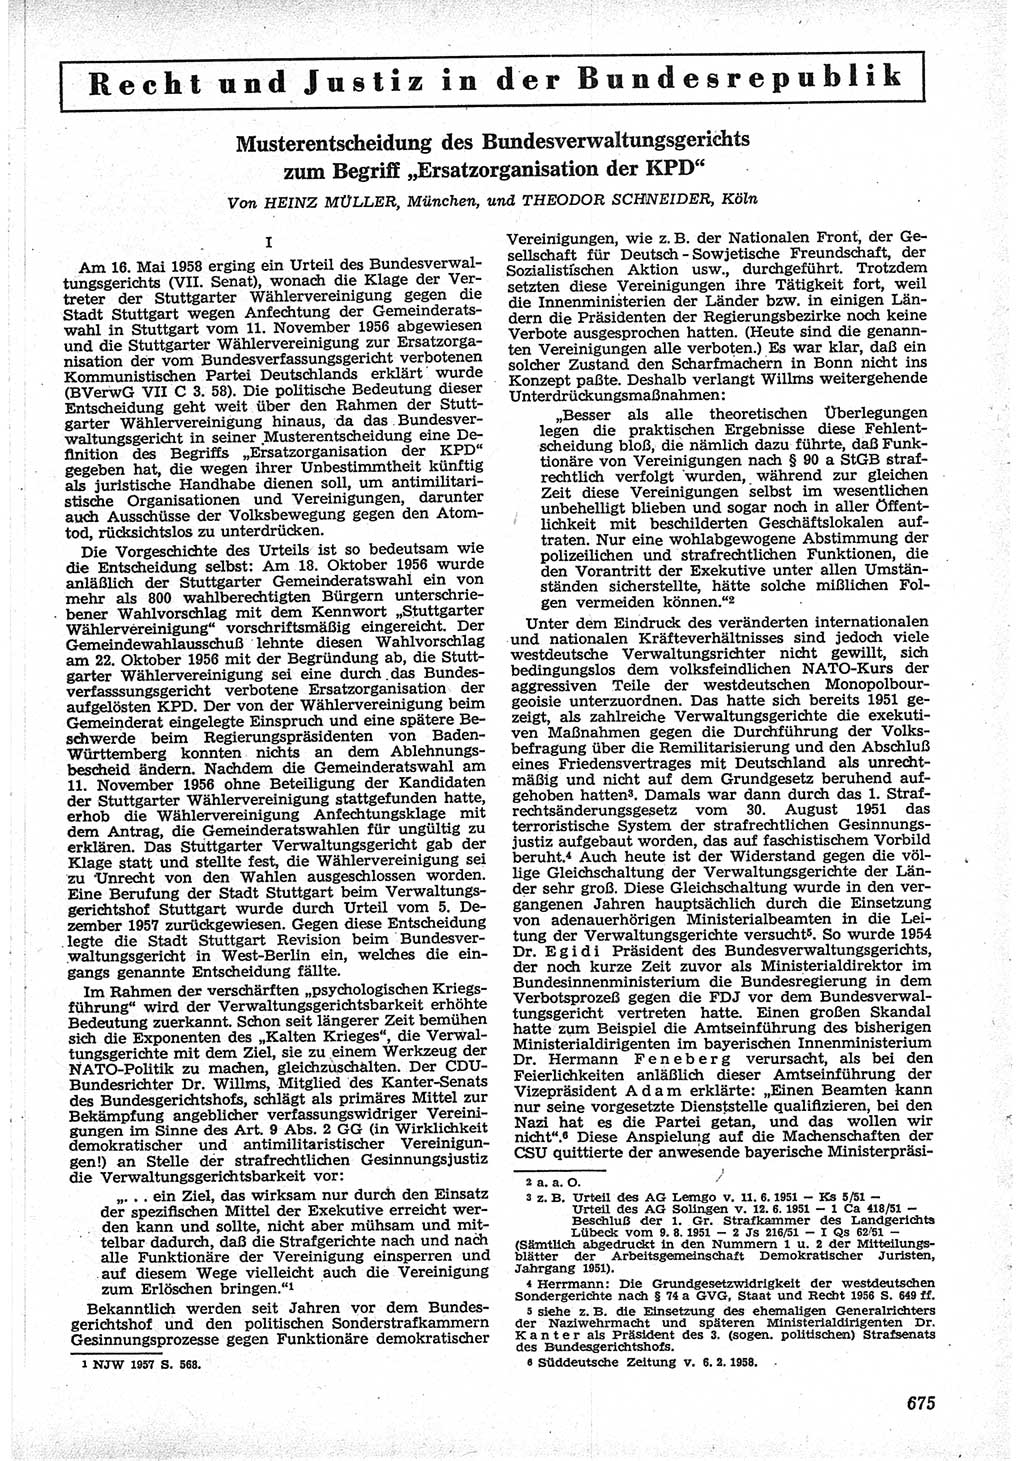 Neue Justiz (NJ), Zeitschrift für Recht und Rechtswissenschaft [Deutsche Demokratische Republik (DDR)], 12. Jahrgang 1958, Seite 675 (NJ DDR 1958, S. 675)